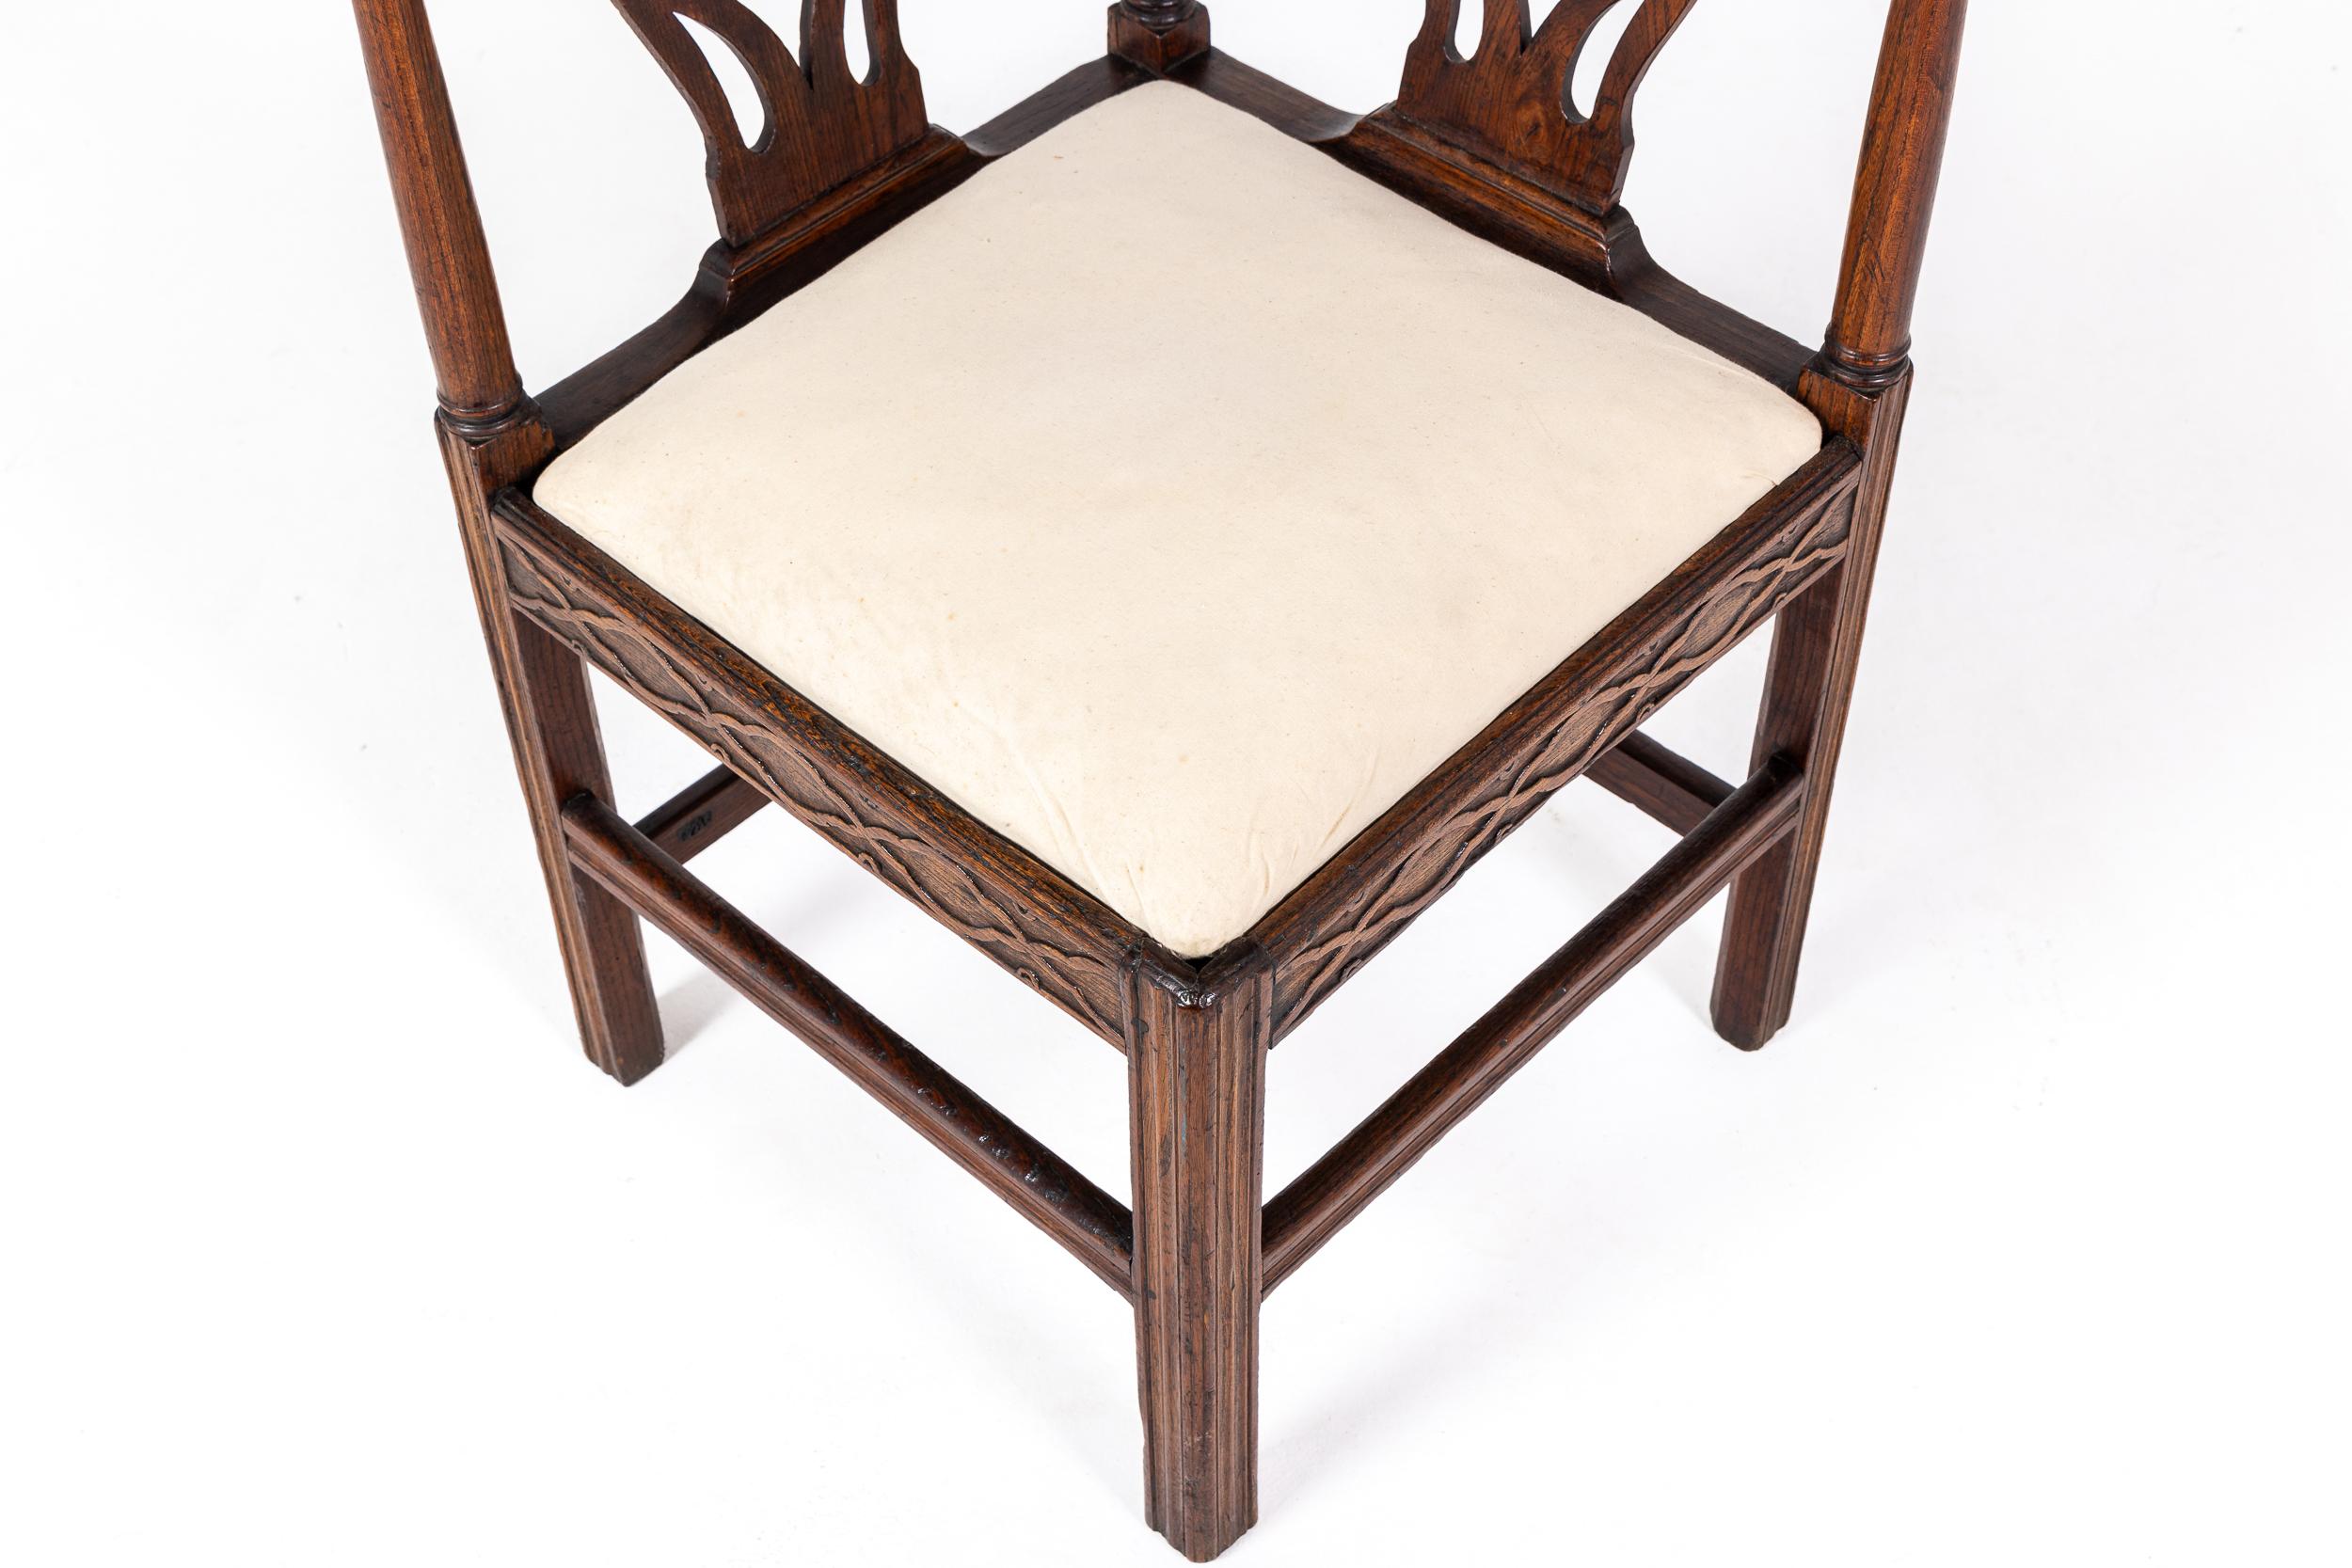 Ein interessanter englischer Eichen-Eckstuhl aus dem späten 18.

Der Eckstuhl, der so konzipiert ist, dass er bei Nichtgebrauch in einer Ecke verstaut werden kann, ist eines der selteneren Beispiele für georgianische Möbel. Dieses besondere Exemplar